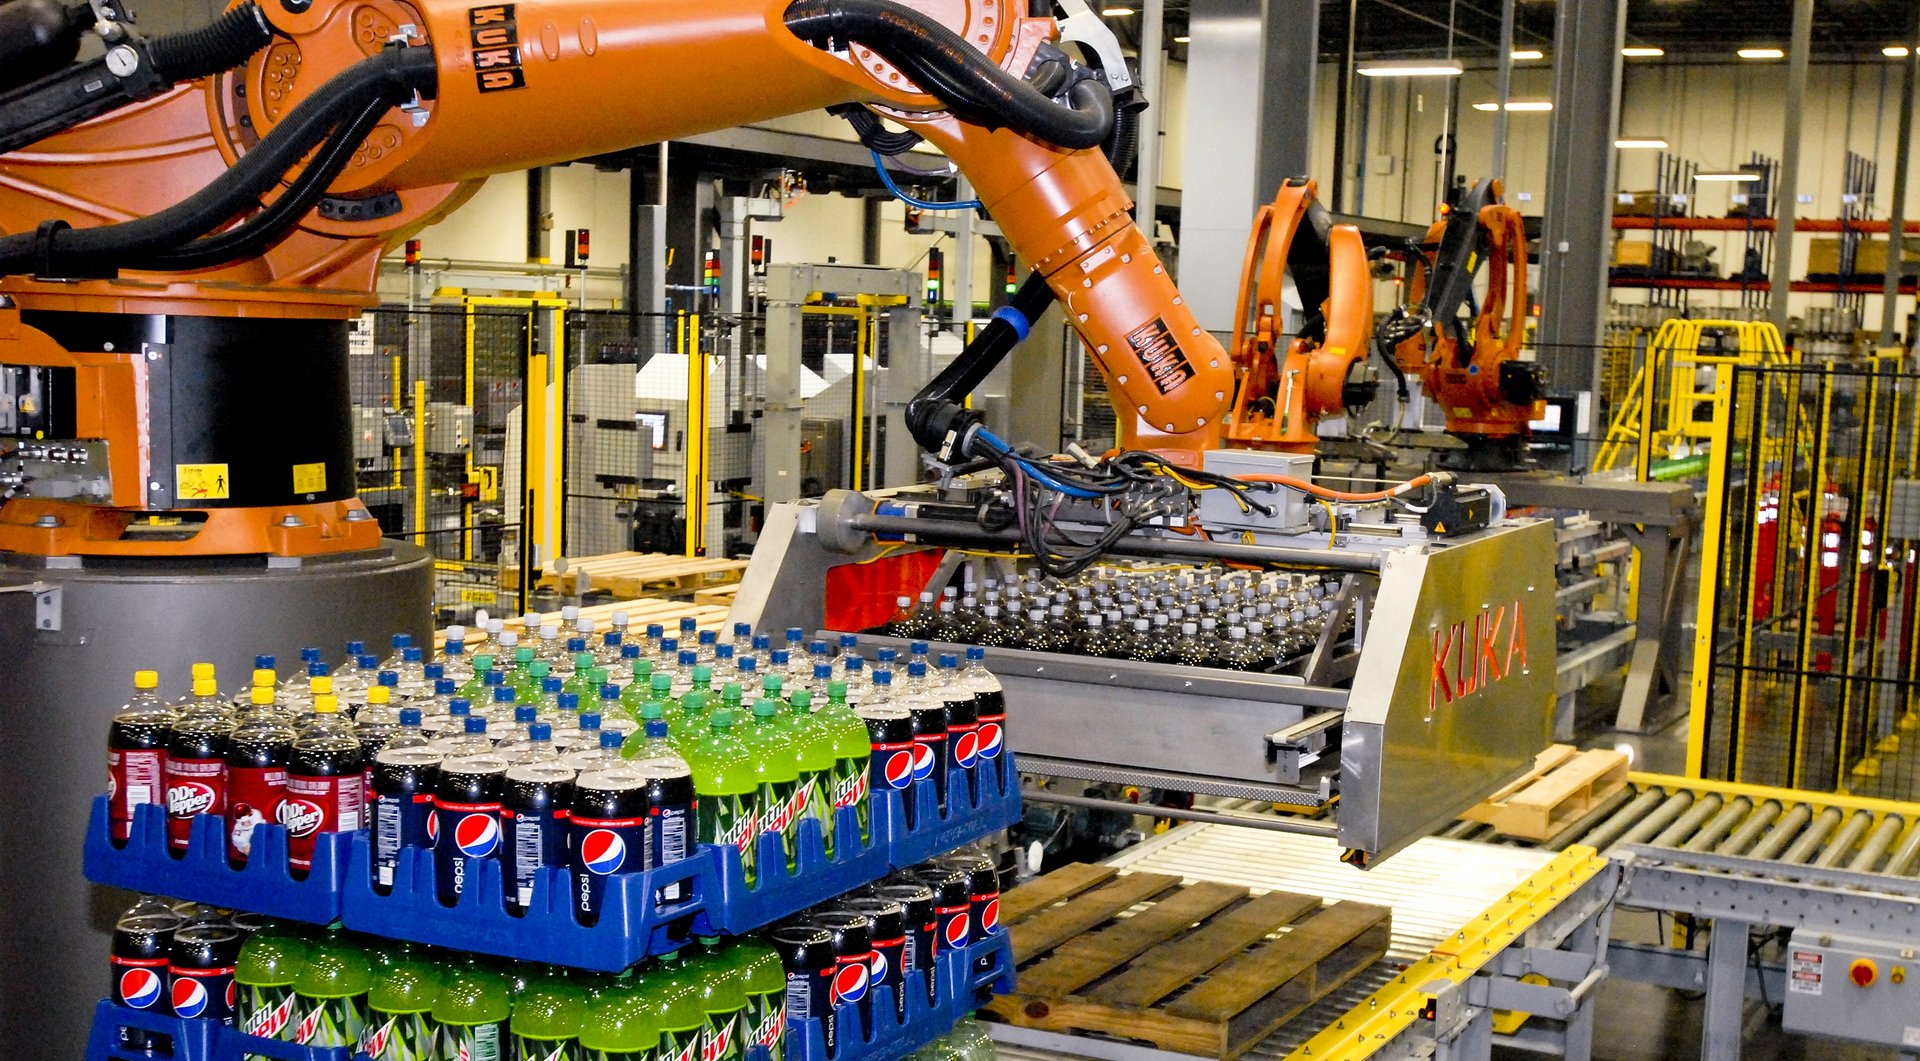 Packroboter für Lagen von Getränken, automatisches Lagersystem der Pepsi Bottling Group, USA